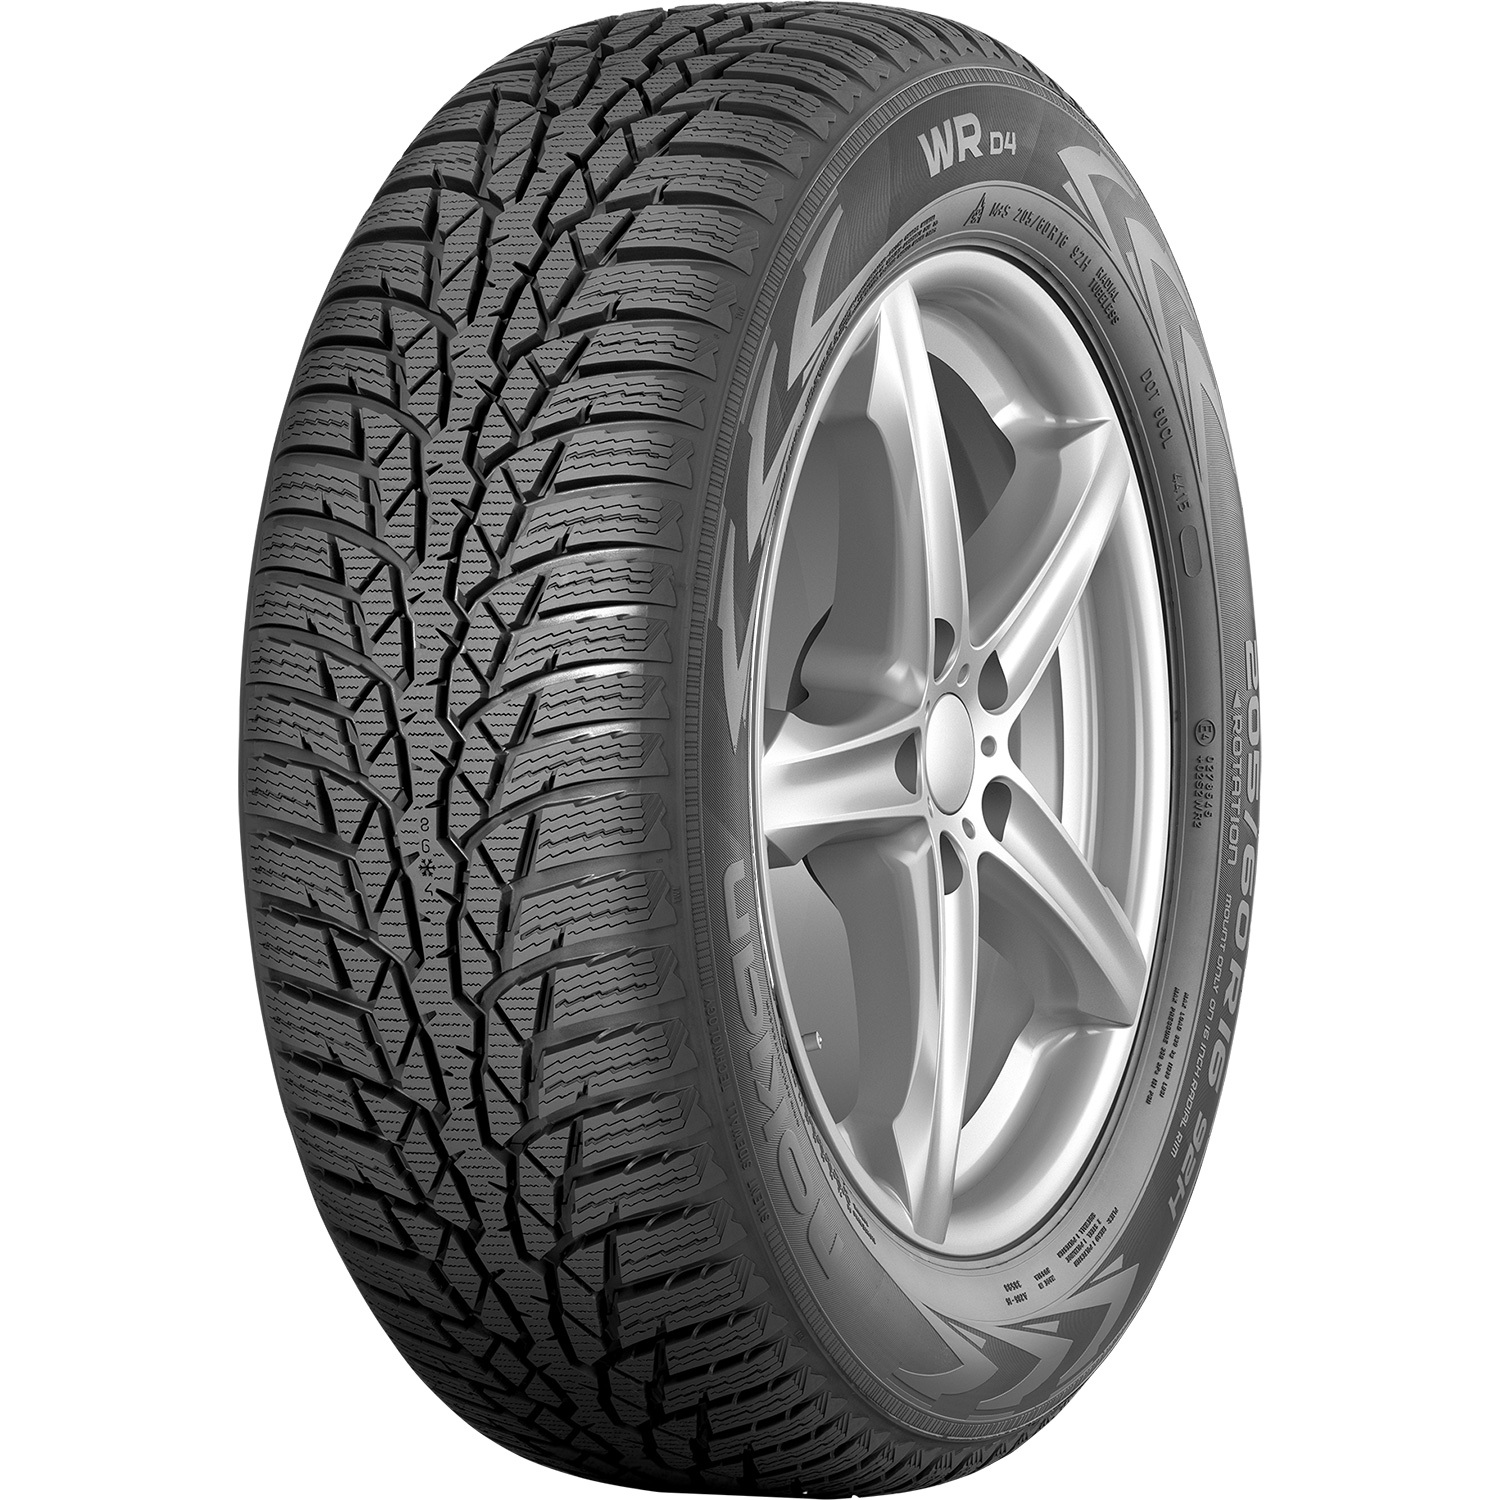 Автомобильная шина Nokian Tyres WR D4 195/55 R16 91H Без шипов nokian tyres hakka green 3 195 55 r16 91h без шипов